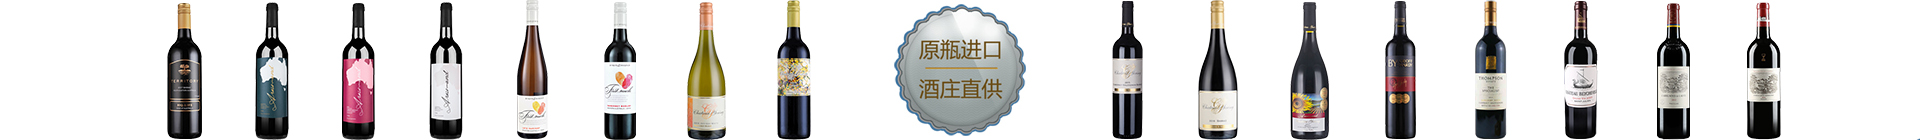 河峪实业正式成为深圳市葡萄酒行业协会会员企业